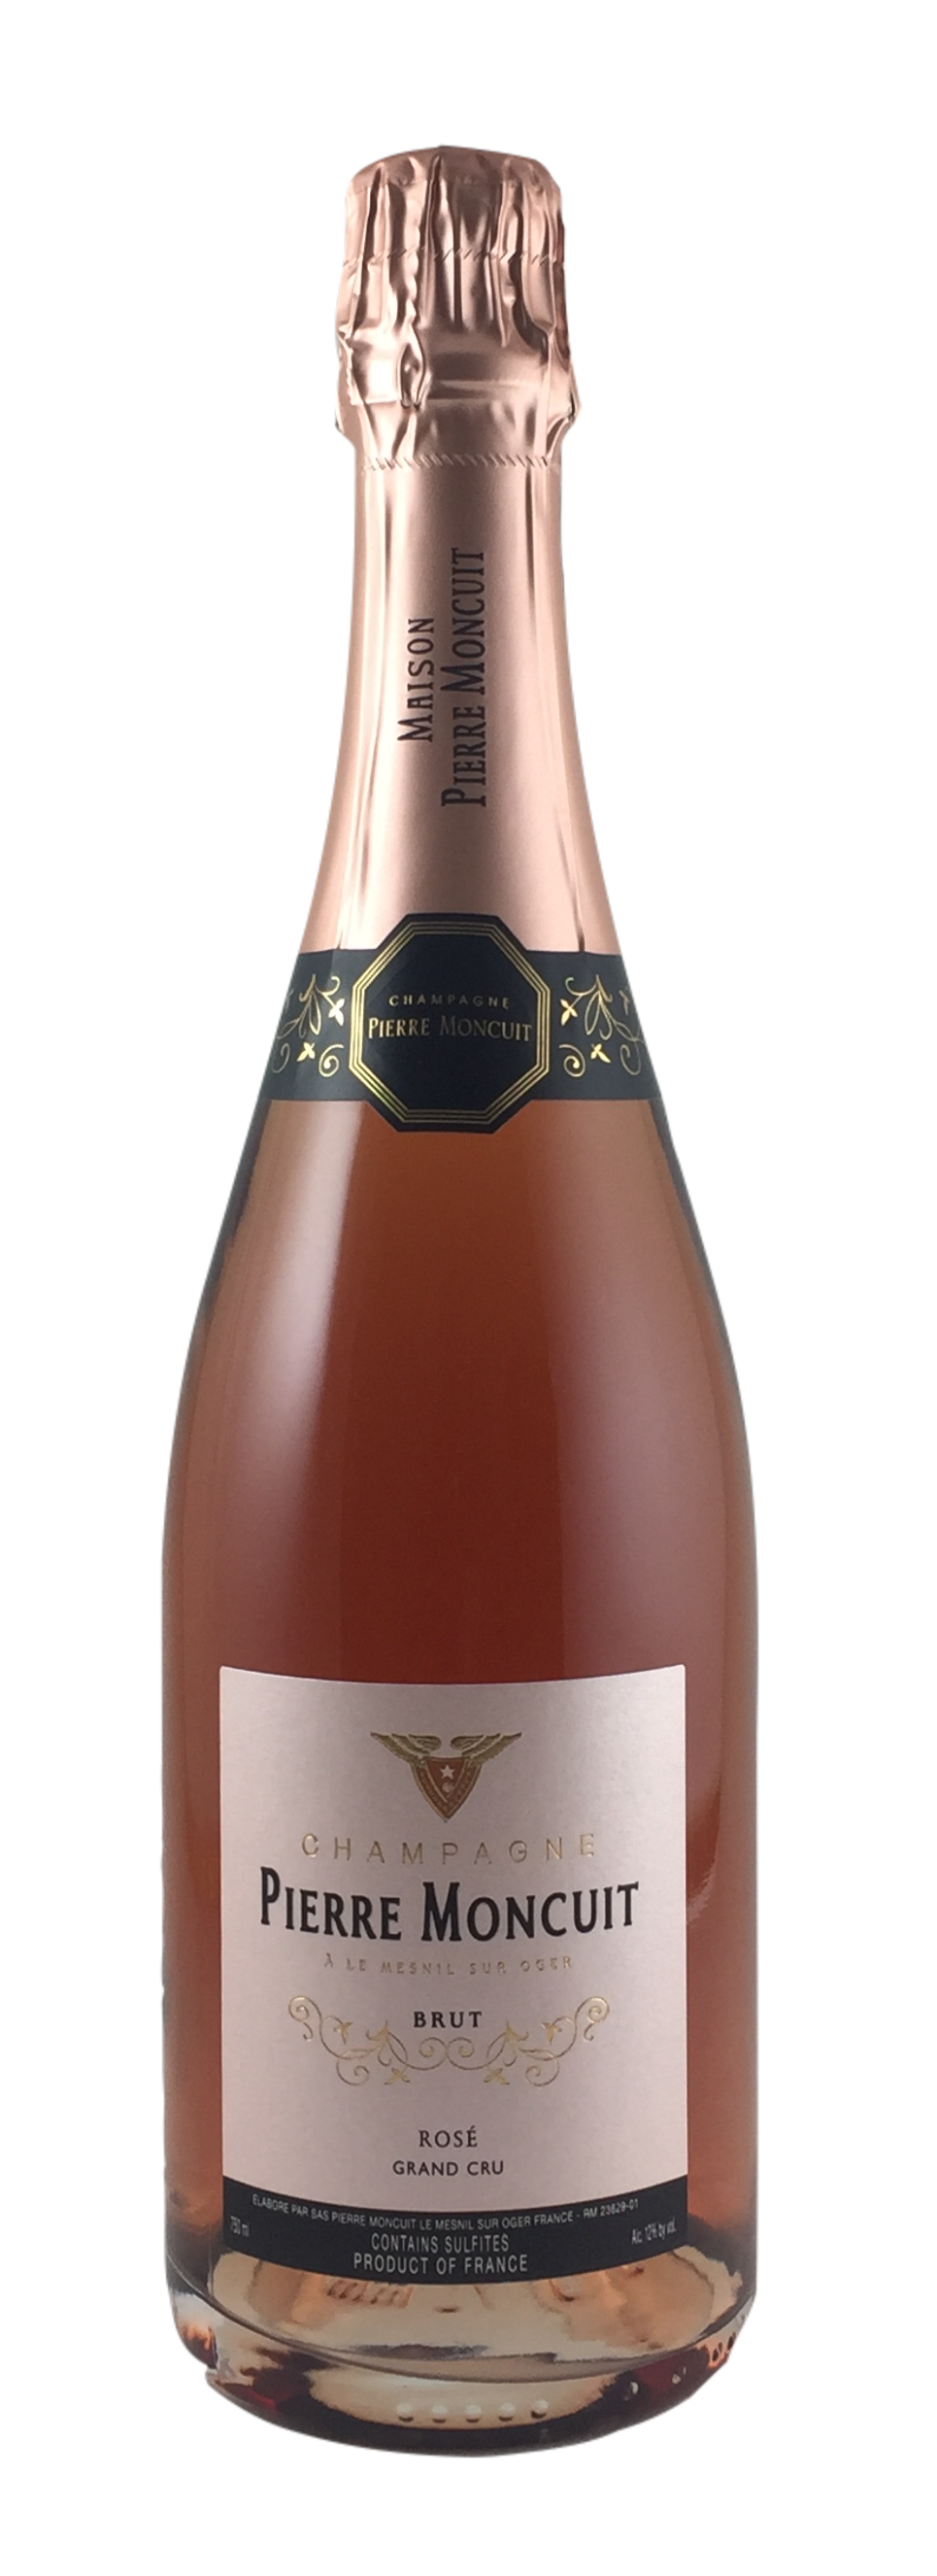 Champagne Pierre Moncuit - Rose Grand Cru brut